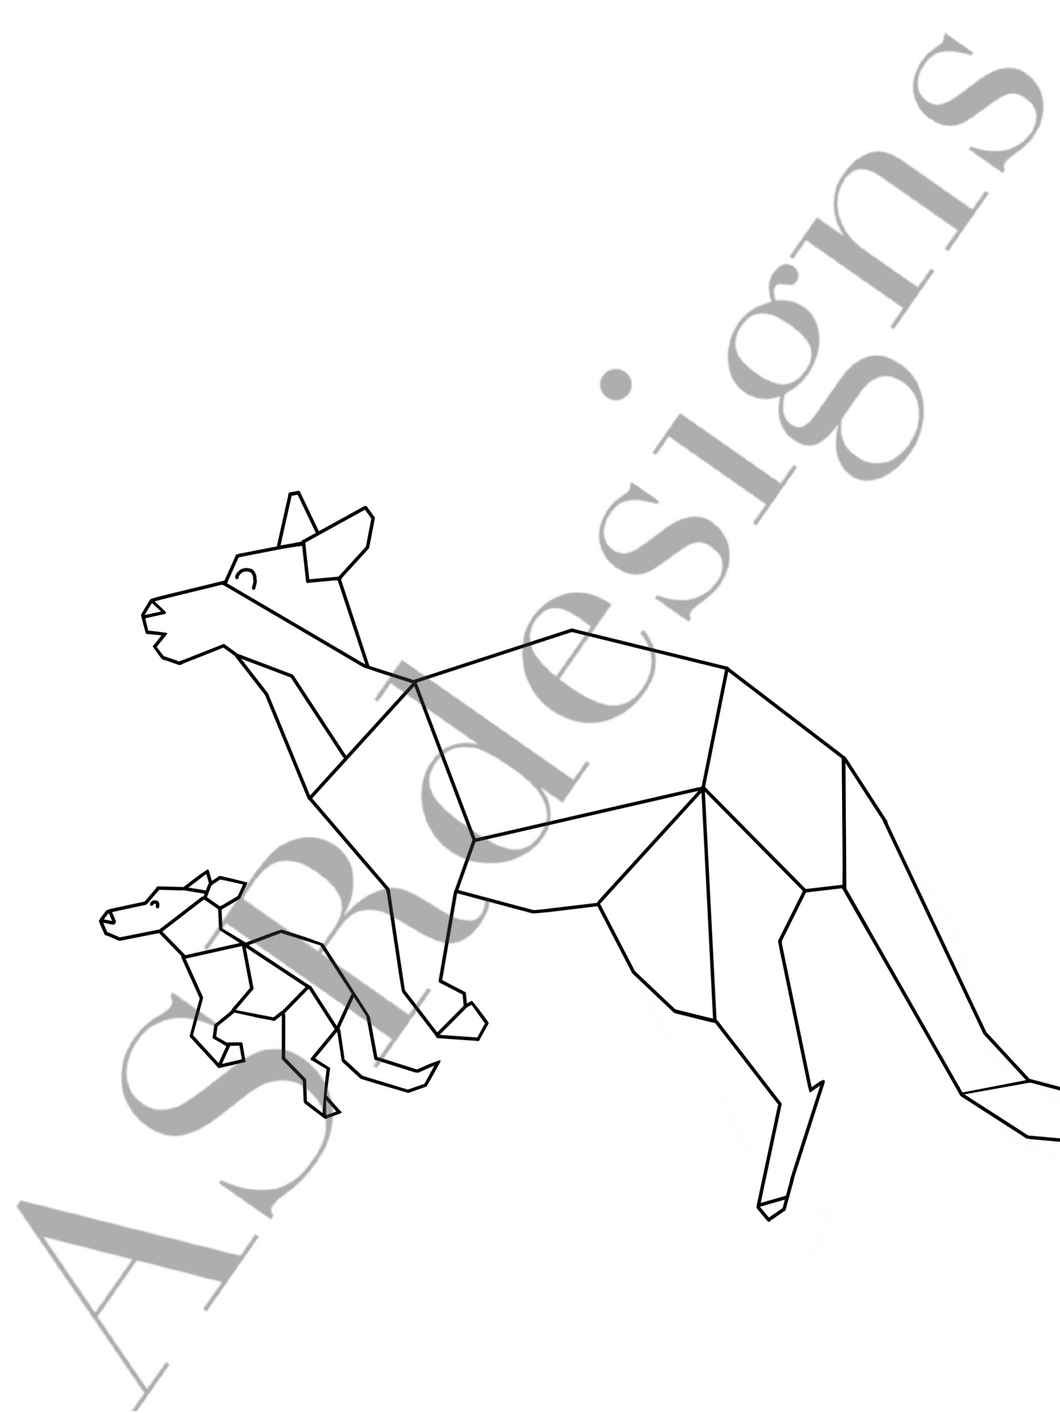 Leuke en lieve poster voor babykamer of kinderkamer van Kangeroe met baby in Australië -  in zwart wit